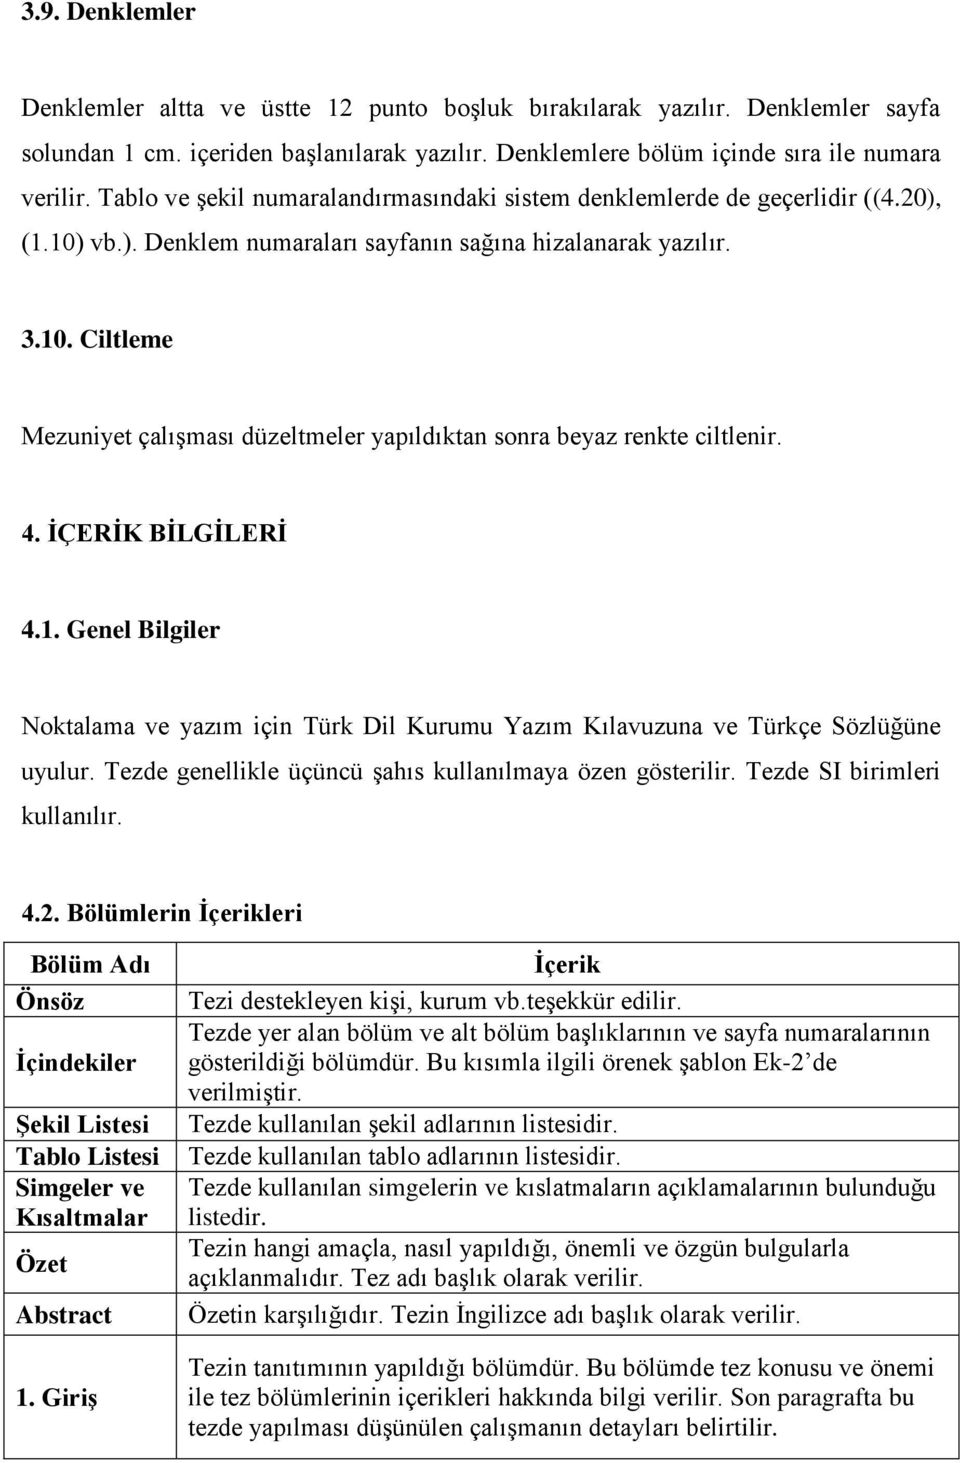 4. İÇERİK BİLGİLERİ 4.1. Genel Bilgiler Noktalama ve yazım için Türk Dil Kurumu Yazım Kılavuzuna ve Türkçe Sözlüğüne uyulur. Tezde genellikle üçüncü şahıs kullanılmaya özen gösterilir.